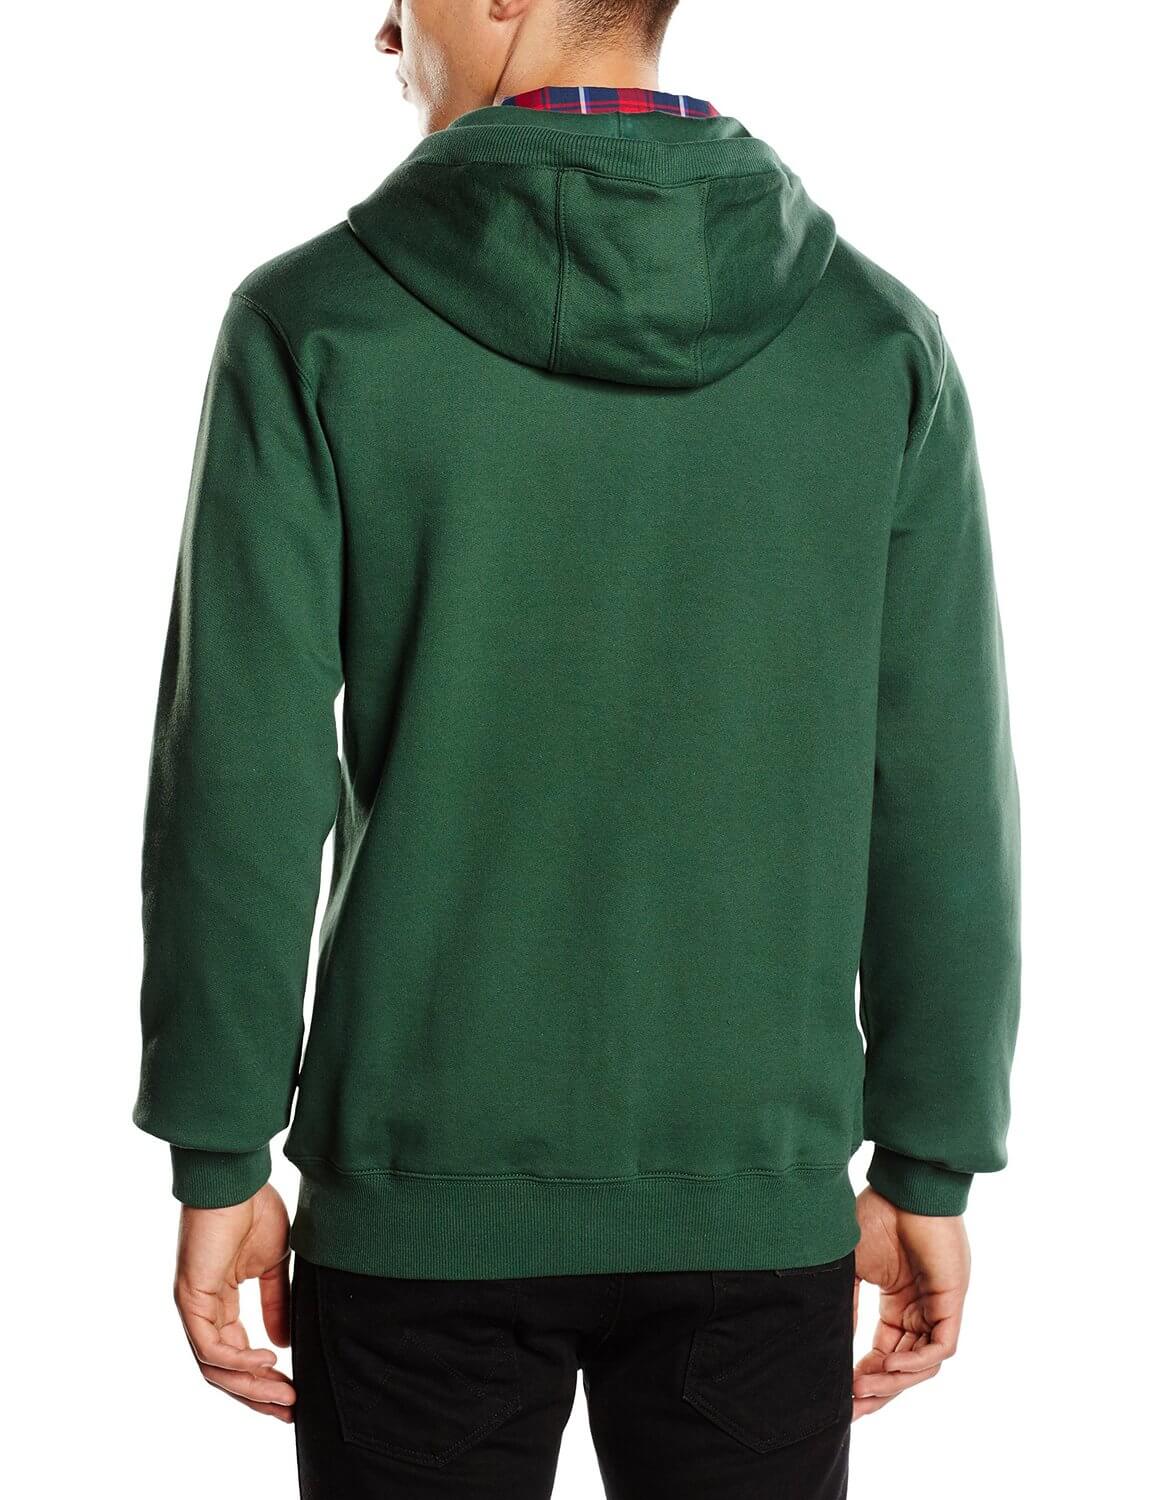 VANS Men’s Classic Zip Up Hooded Sweatshirt Hoodie Trekking Green Top ...